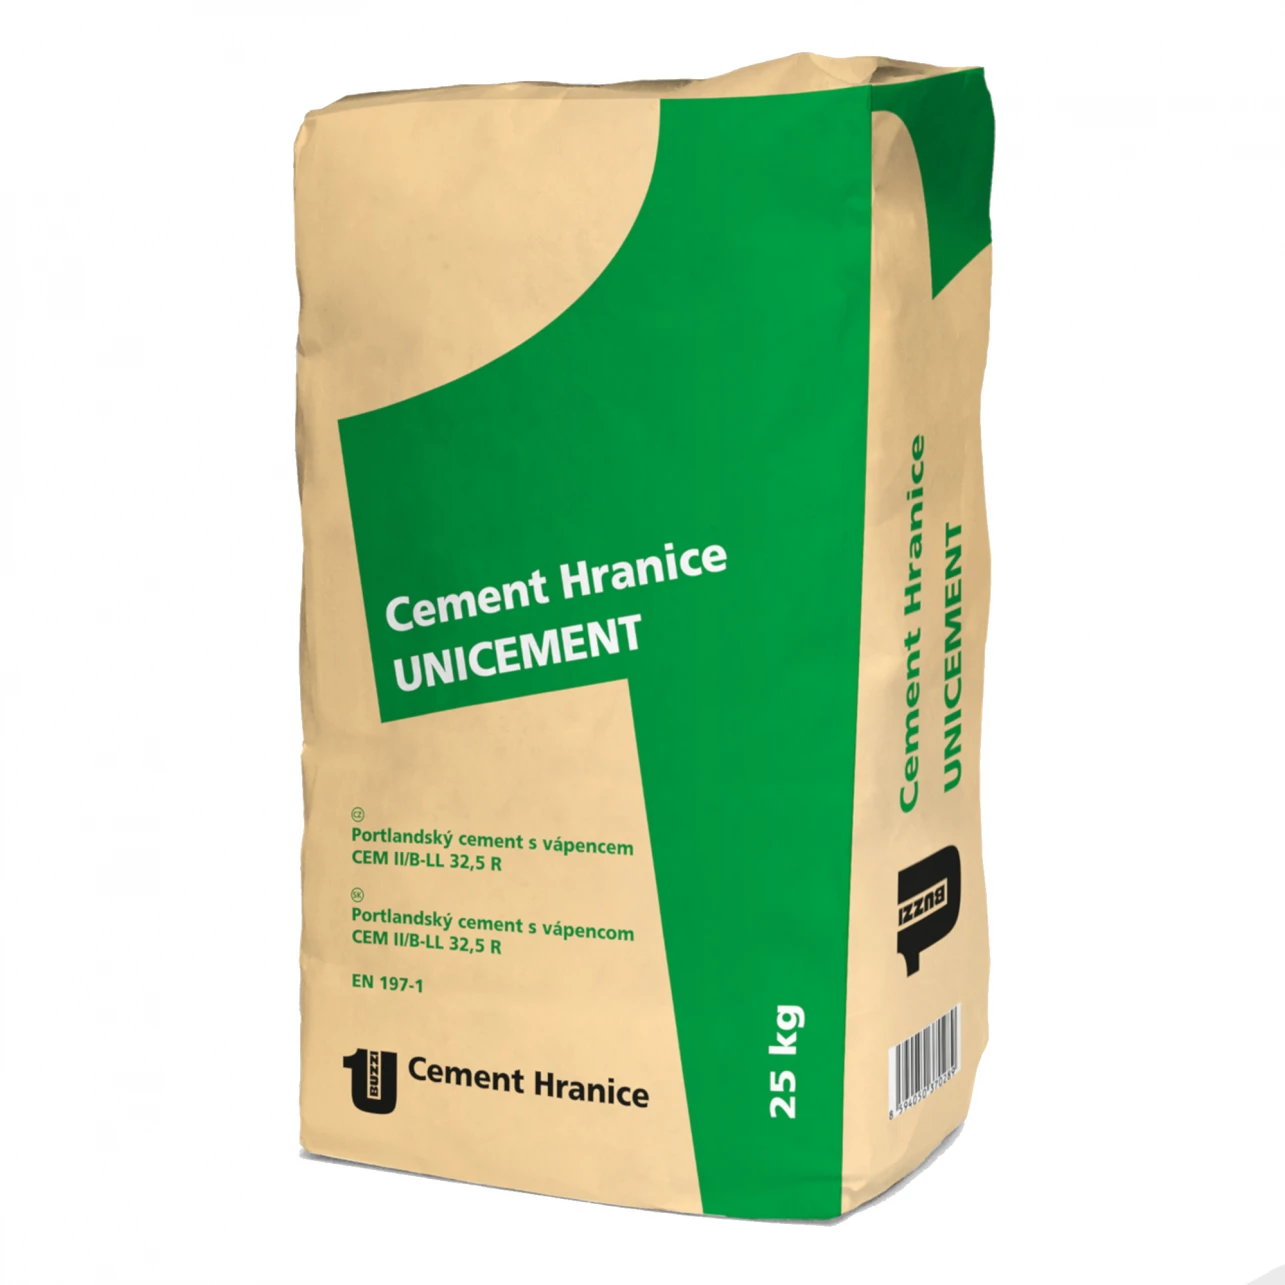 Cement portlandský směsný Unicement CEM II/B-LL 32,5 R 25 kg - cement hranice portlantský.webp